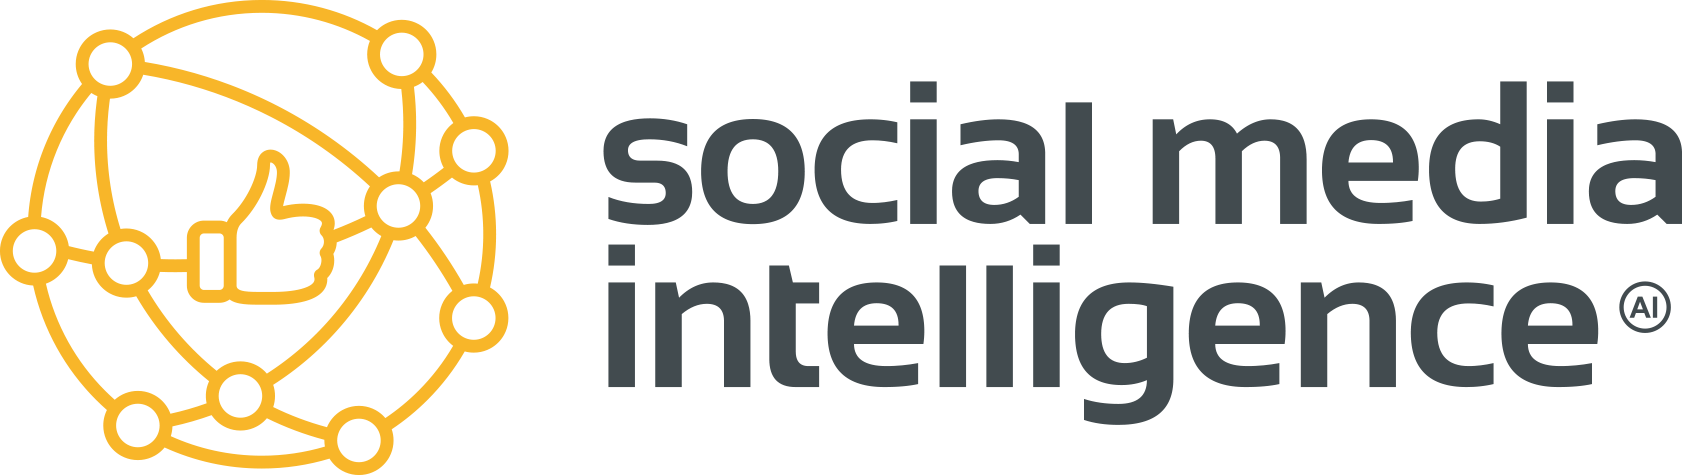 social_media_intelligence_jasne_tlo-3